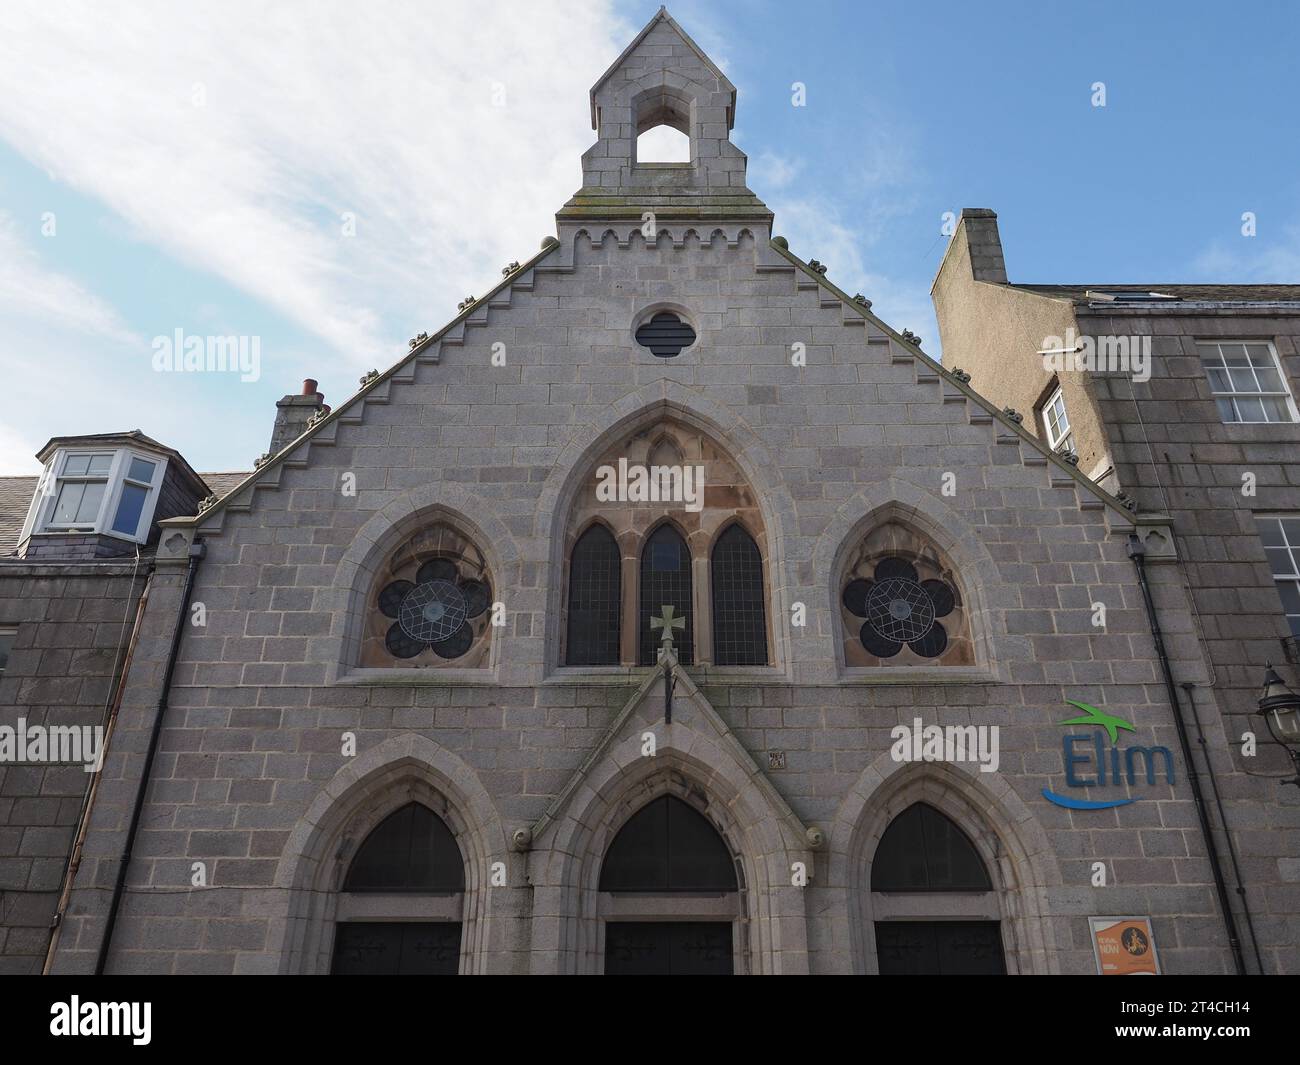 ABERDEEN, UK - SEPTEMBER 14, 2023: Aberdeen Elim Church Stock Photo